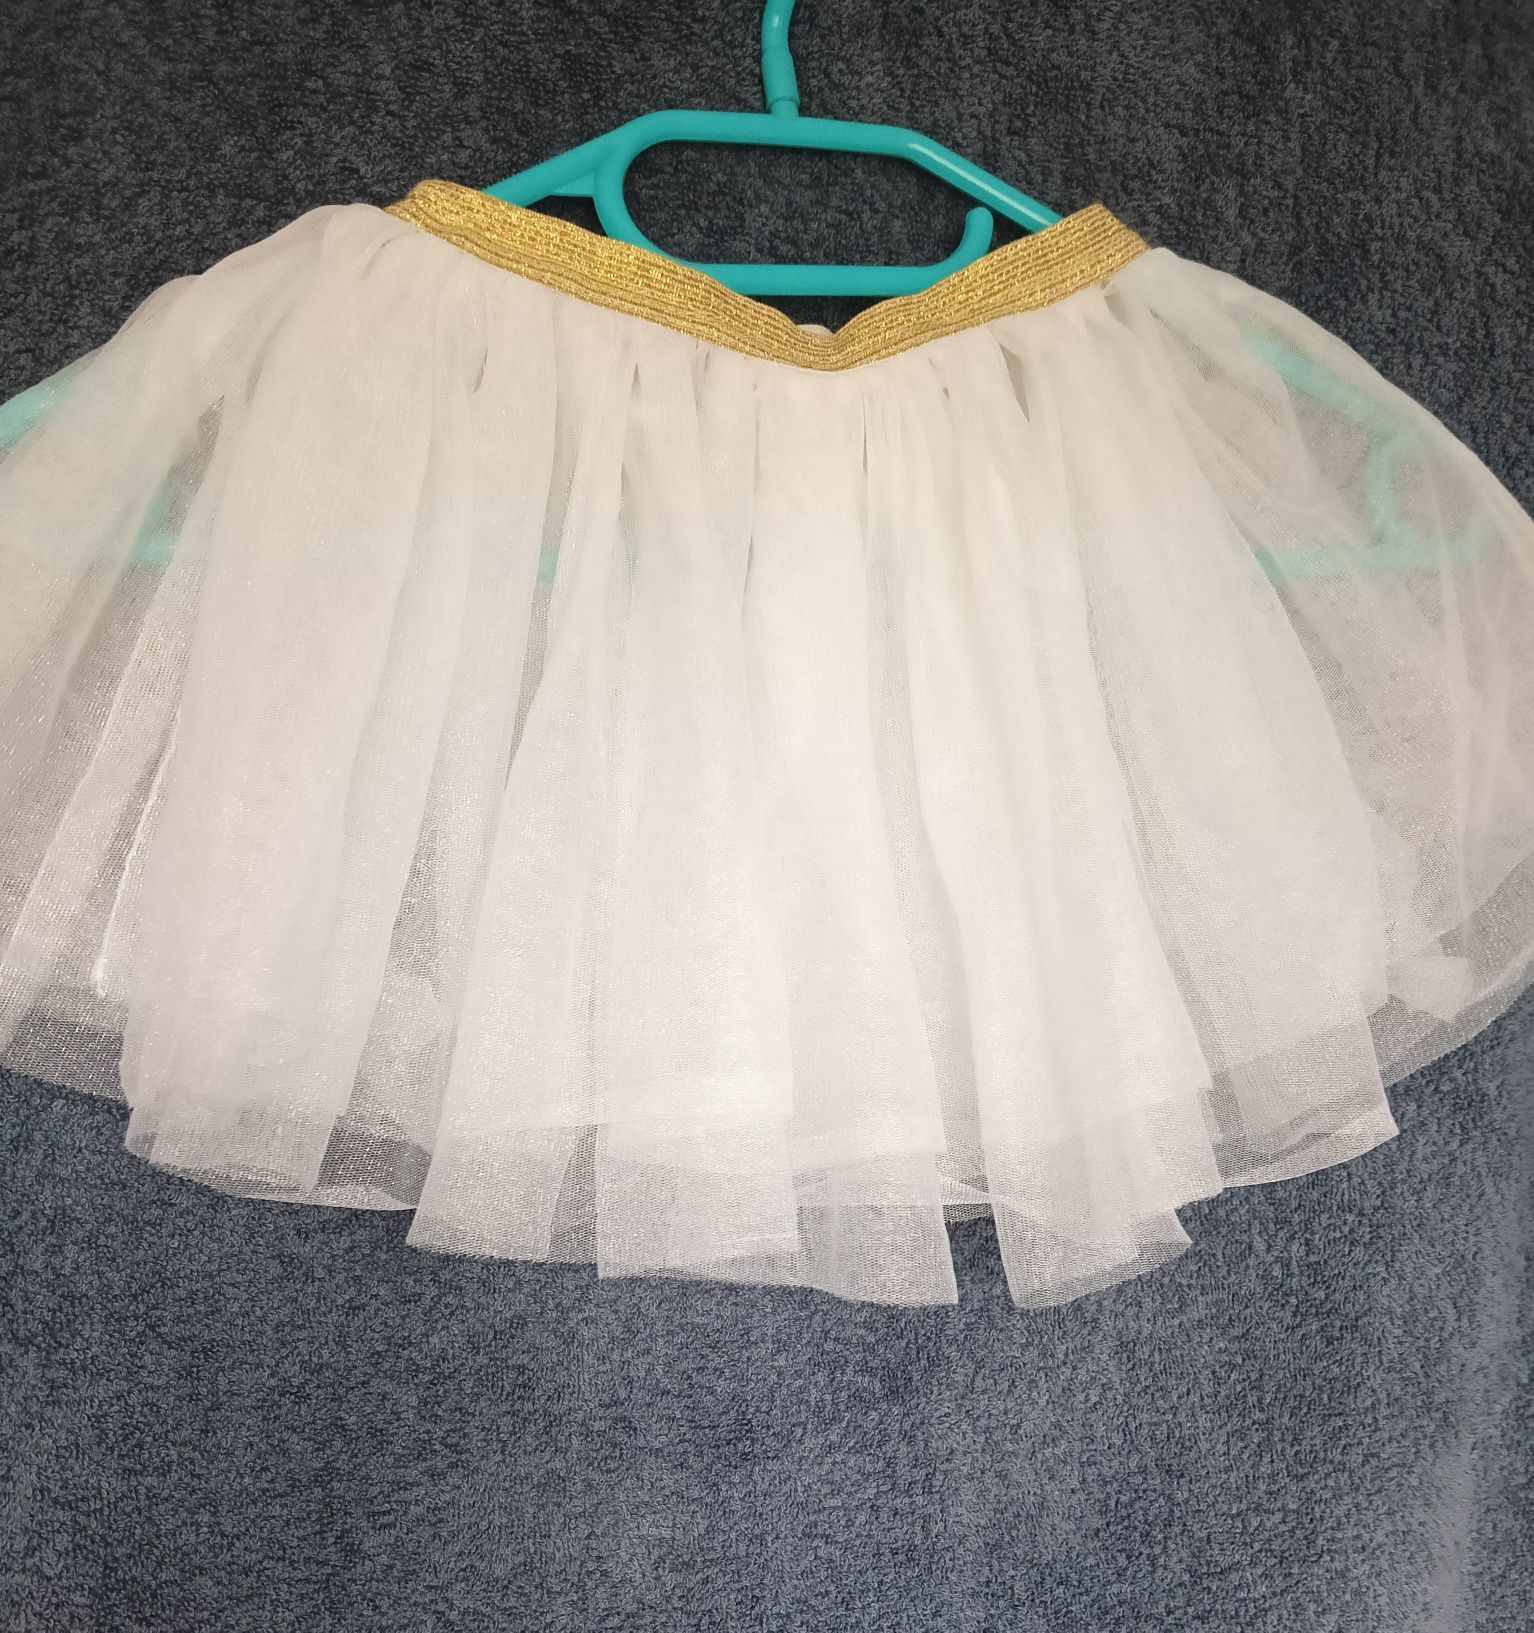 Biała spódniczka spódnica tiulowa Reserved, baletowa, r 92